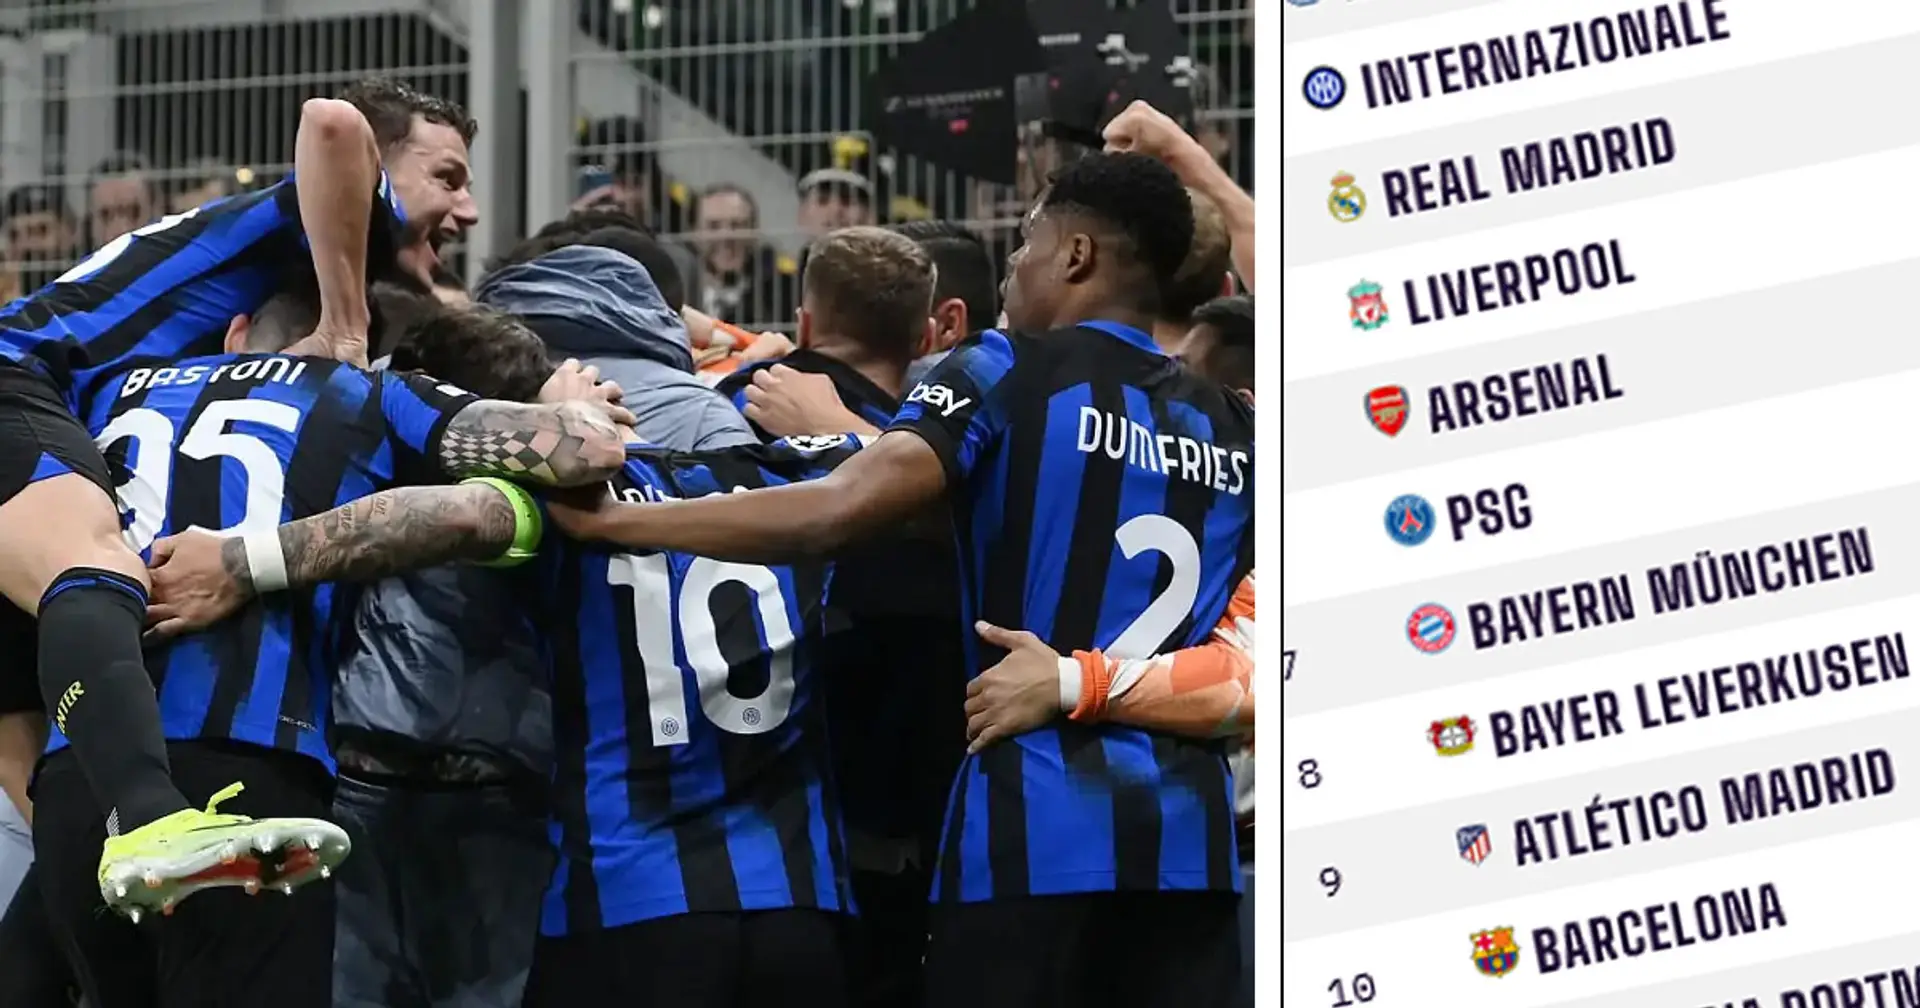 Svelate le migliori squadre al mondo secondo il Power Ranking: Inter sul podio